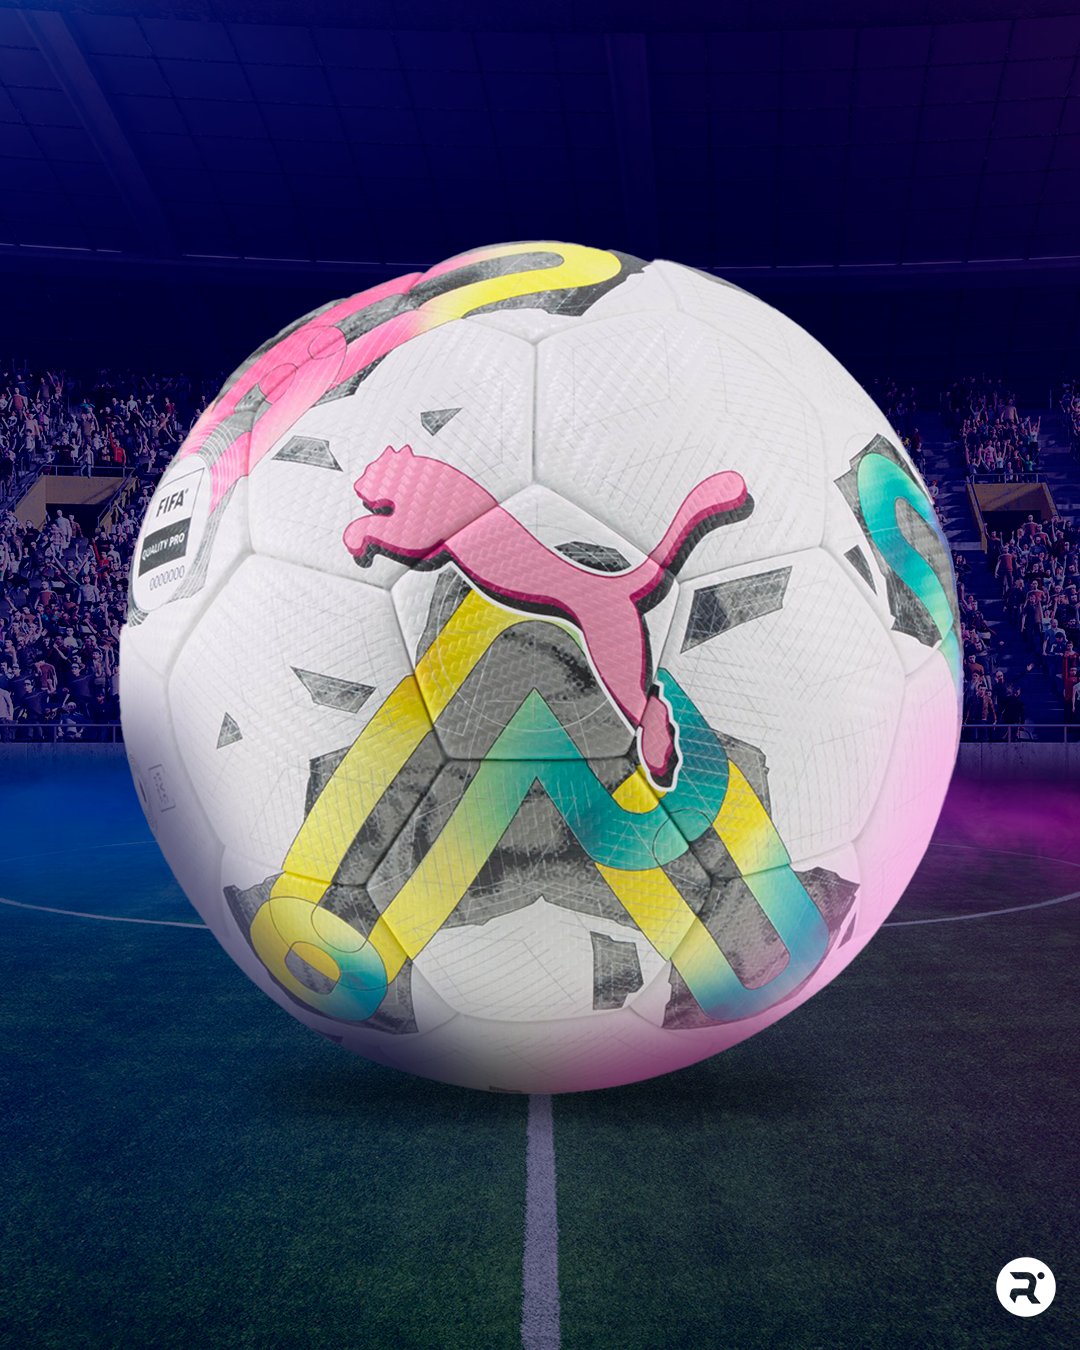 Relevo on X: La Liga Profesional de Fútbol Femenino ya tiene